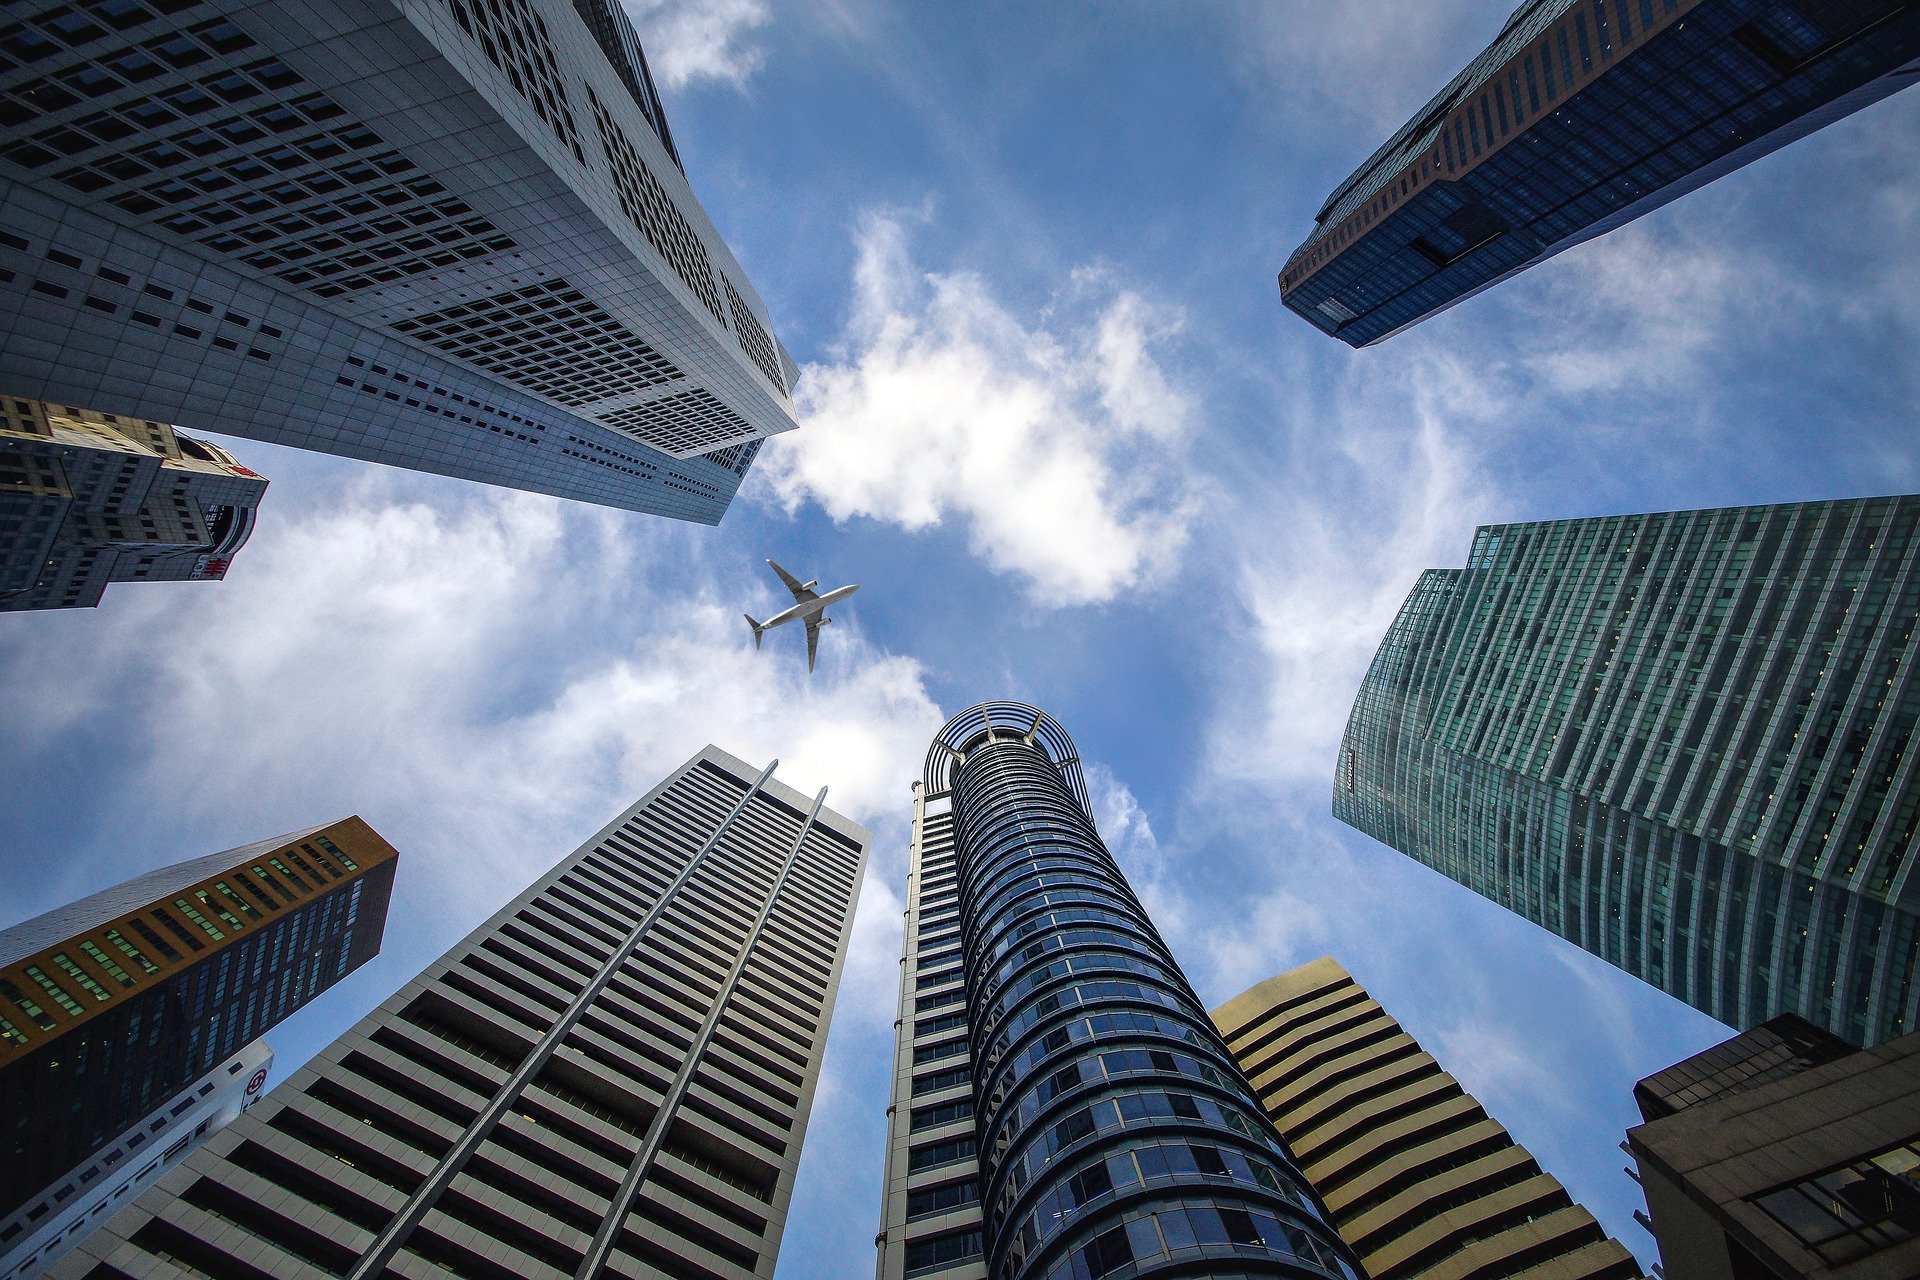 Imagem feita de baixo para cima mostrando vários prédios e um avião passando no céu